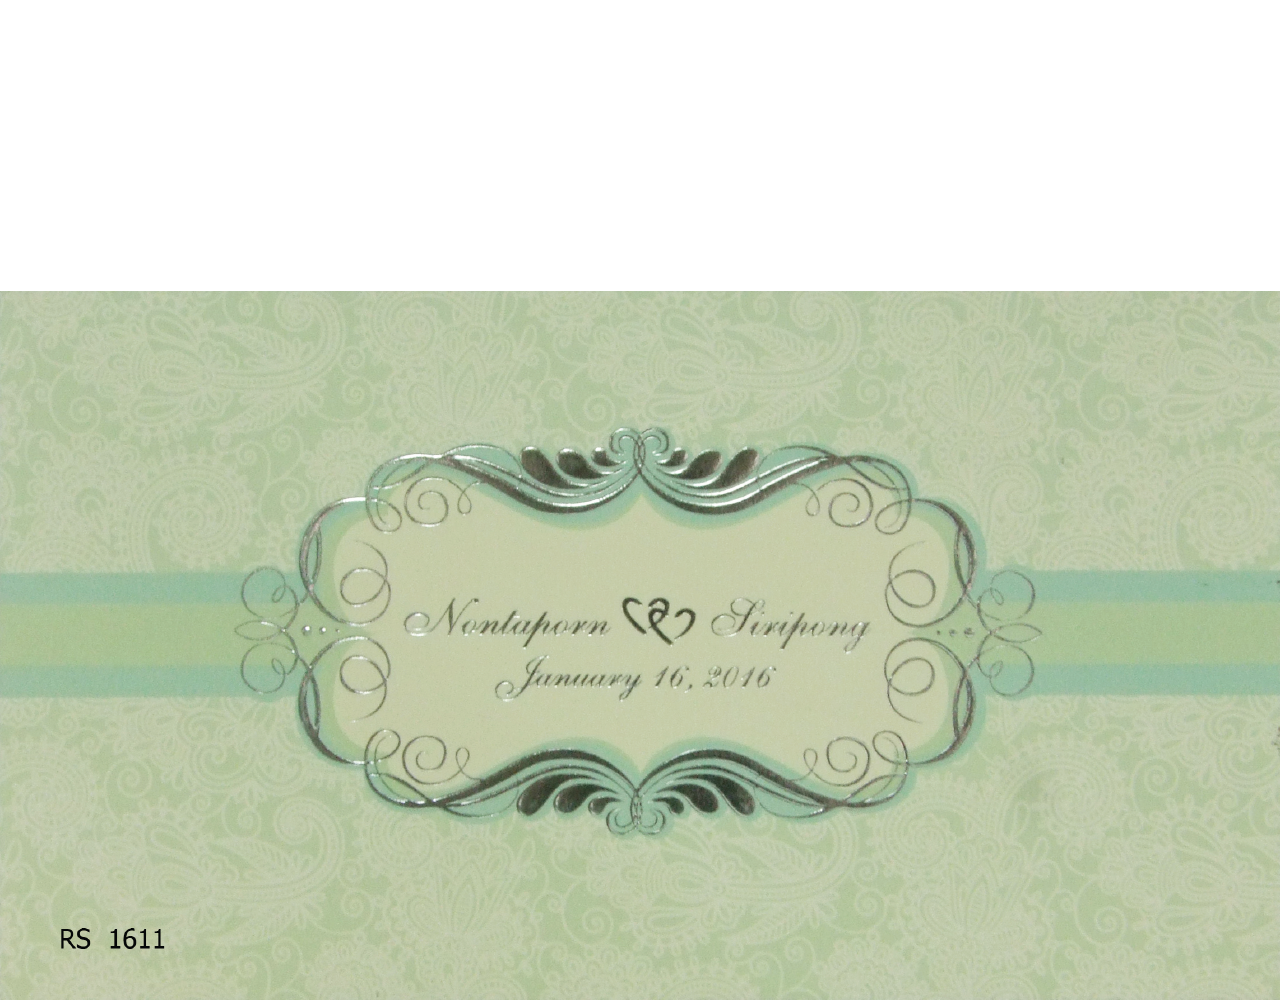 การ์ดแต่งงาน การ์ดเชิญแต่งงาน ราคาถูกๆ รูปแบบเรียบๆ สีครีมเขียว wedding card 10.5 x 18.5 cm RS.1611 ฿ 5.25